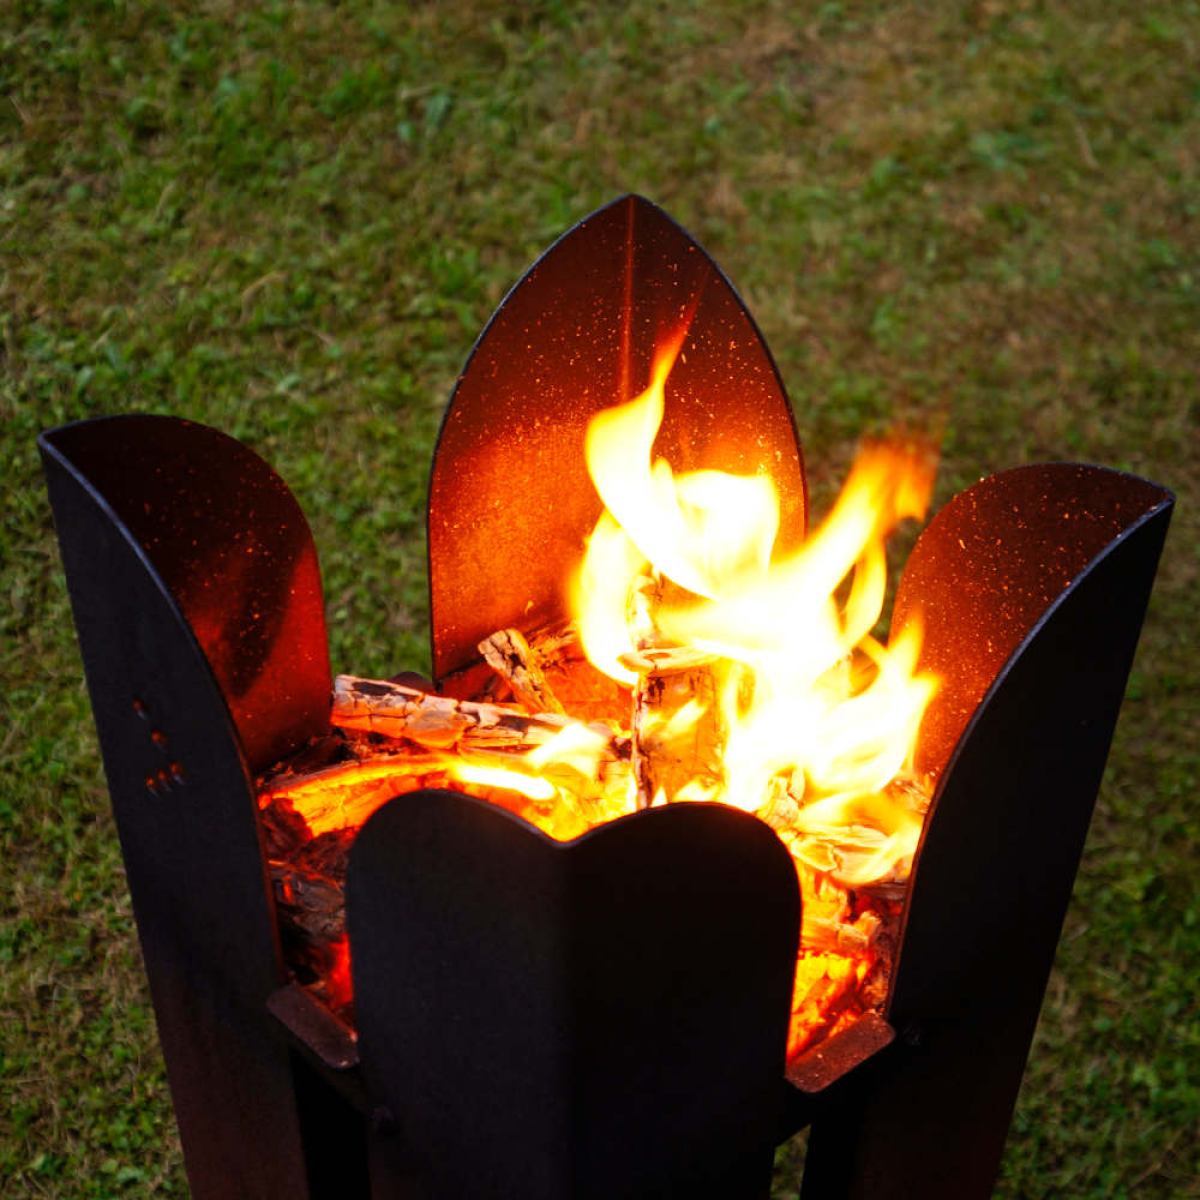 Sculptural Fireplace / Garden Torch made of Weatherproof Steel